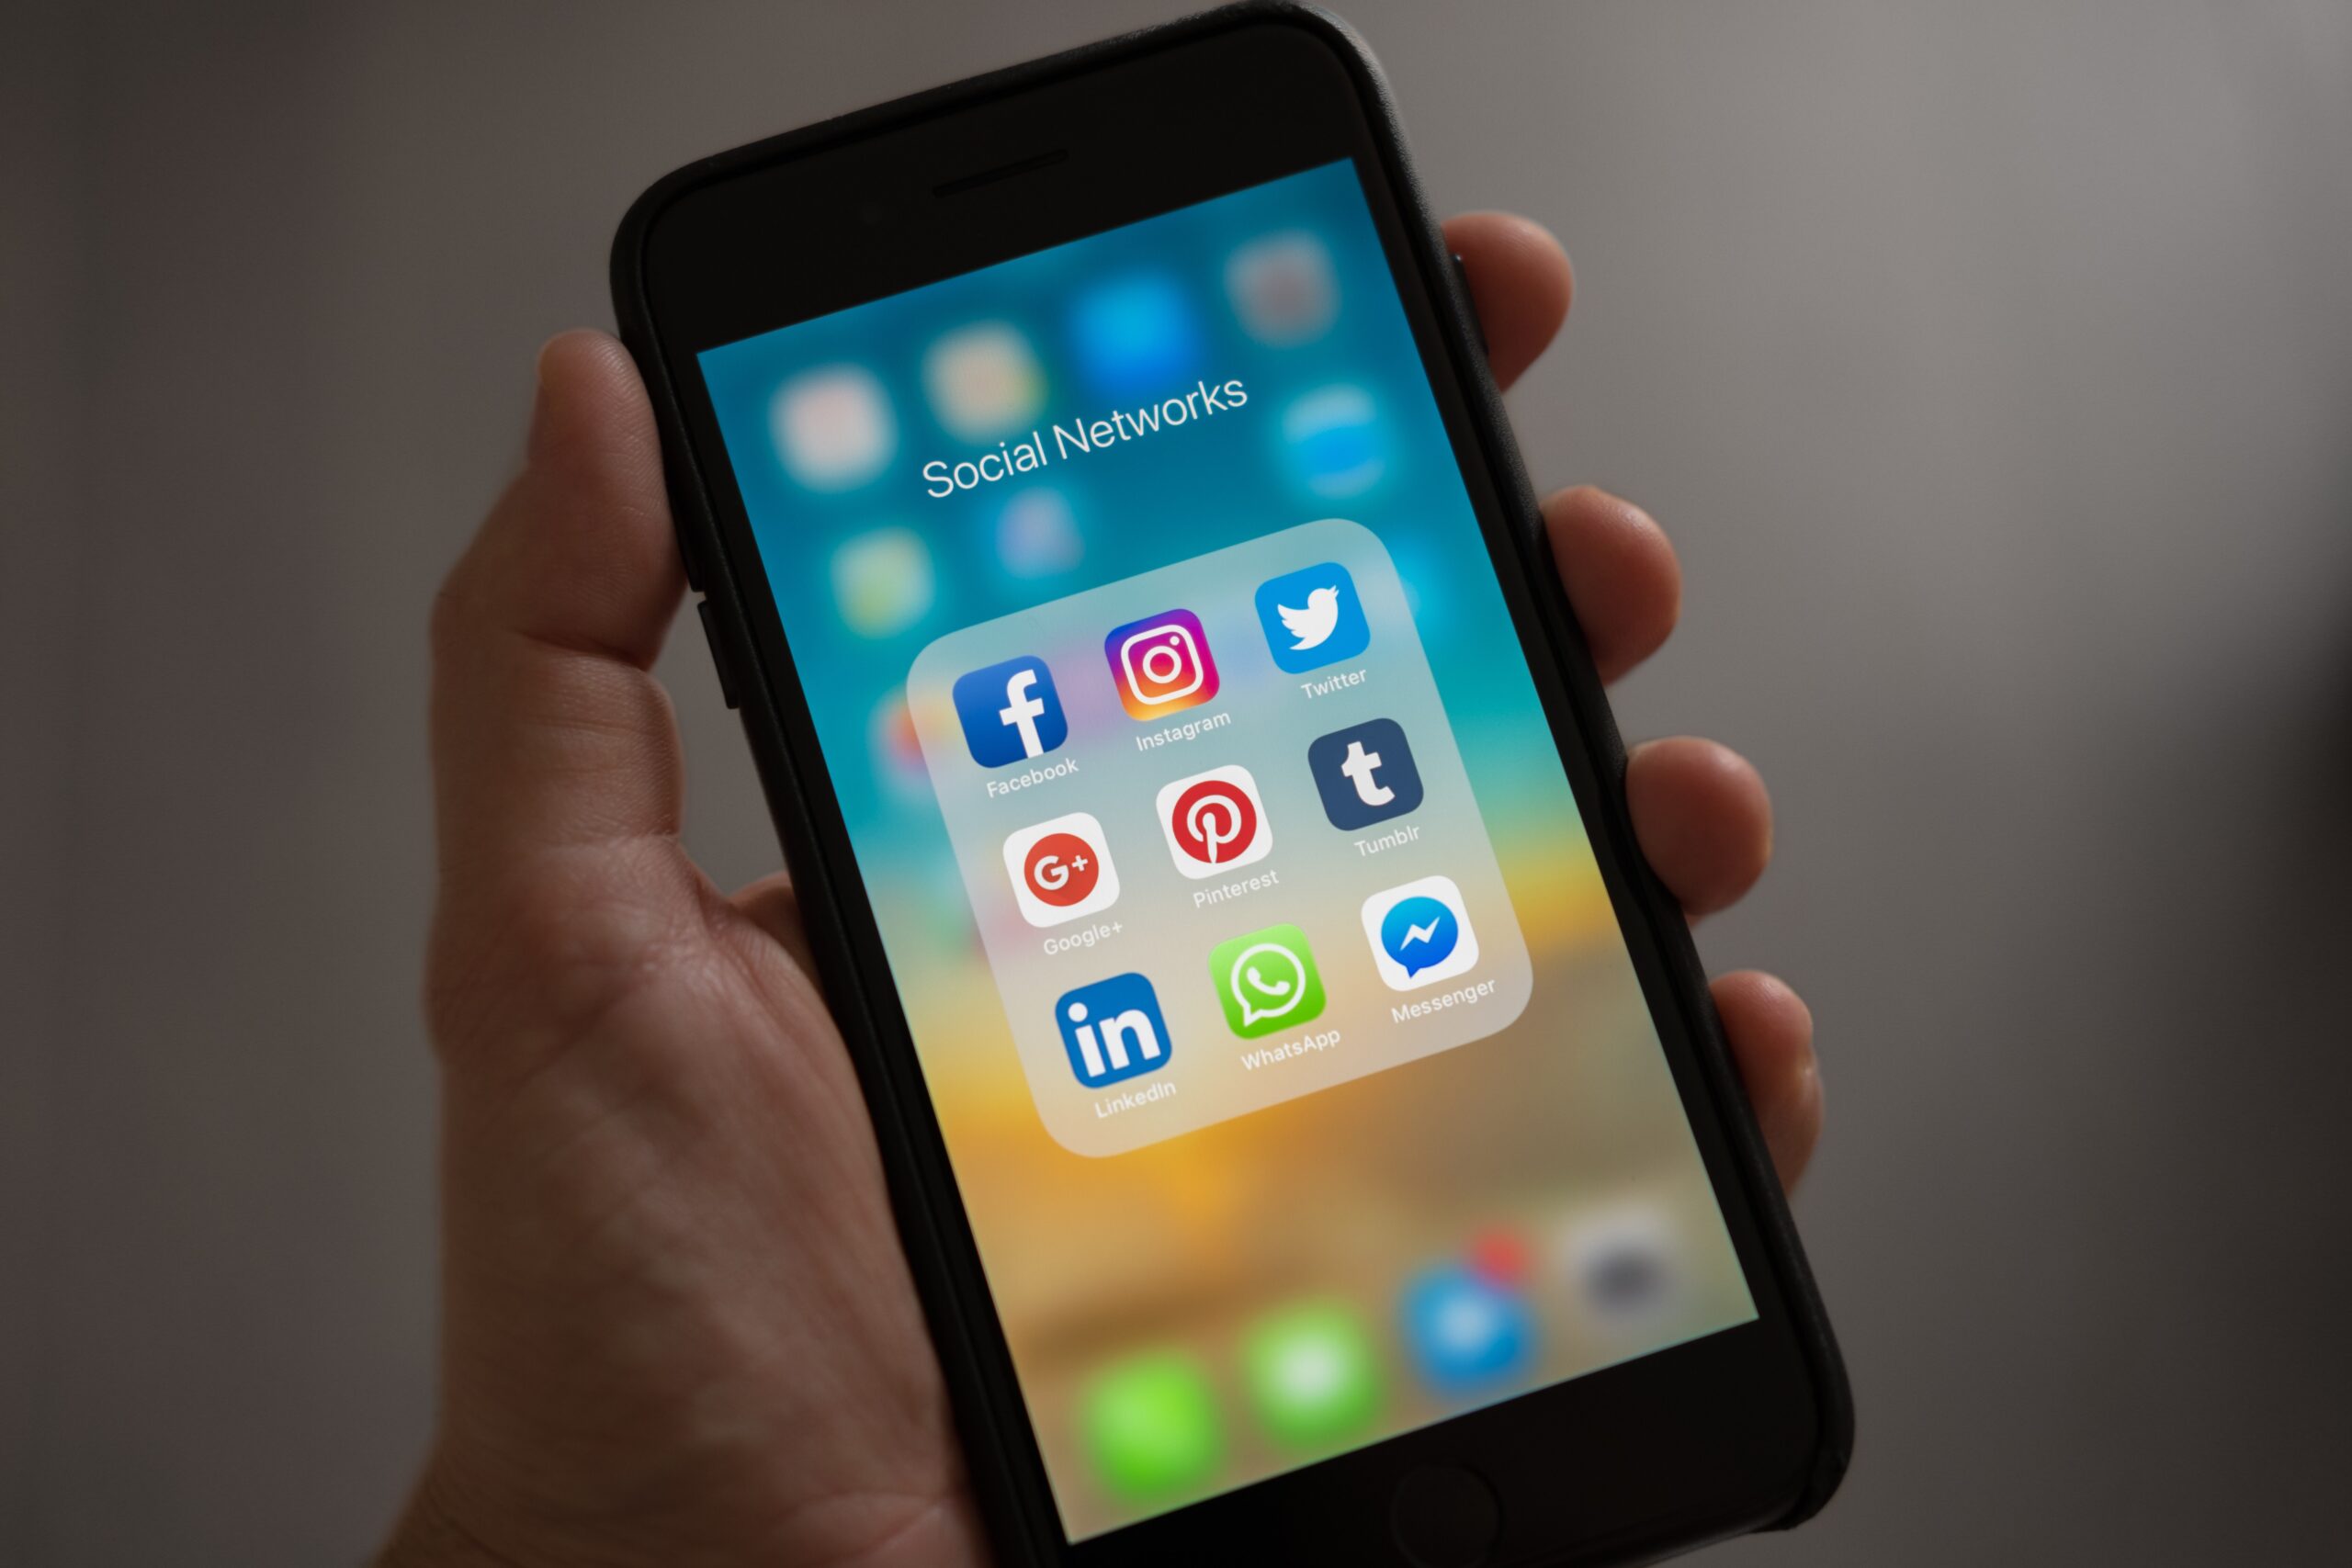 Social Media App Logos On Phone